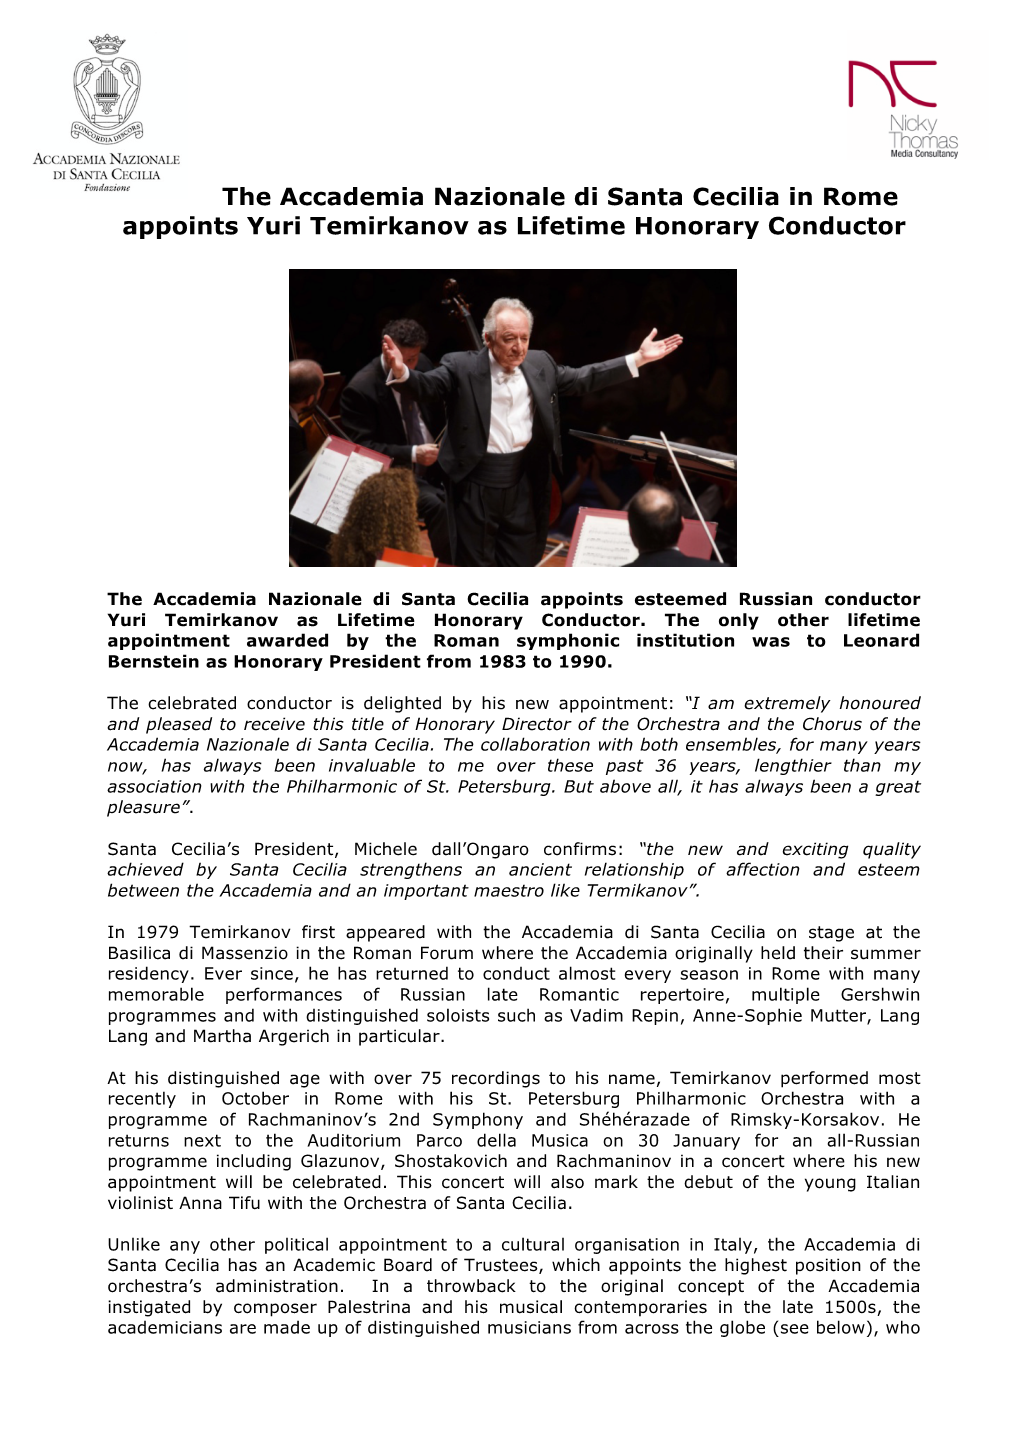 The Accademia Nazionale Di Santa Cecilia in Rome Appoints Yuri Temirkanov As Lifetime Honorary Conductor